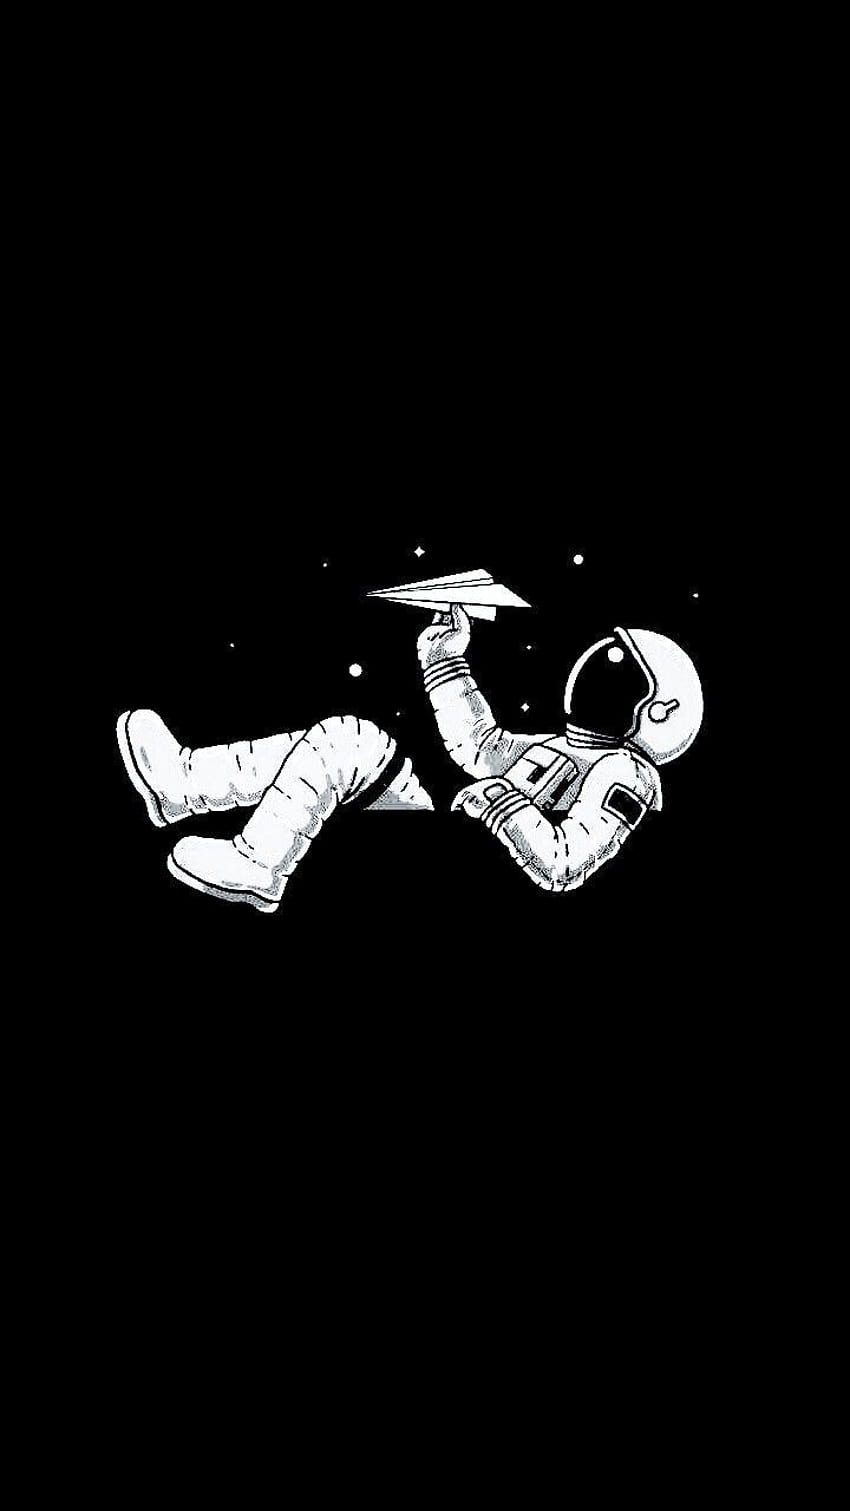 Black and White Space Man : iphone, iphone pria hitam dan putih wallpaper ponsel HD